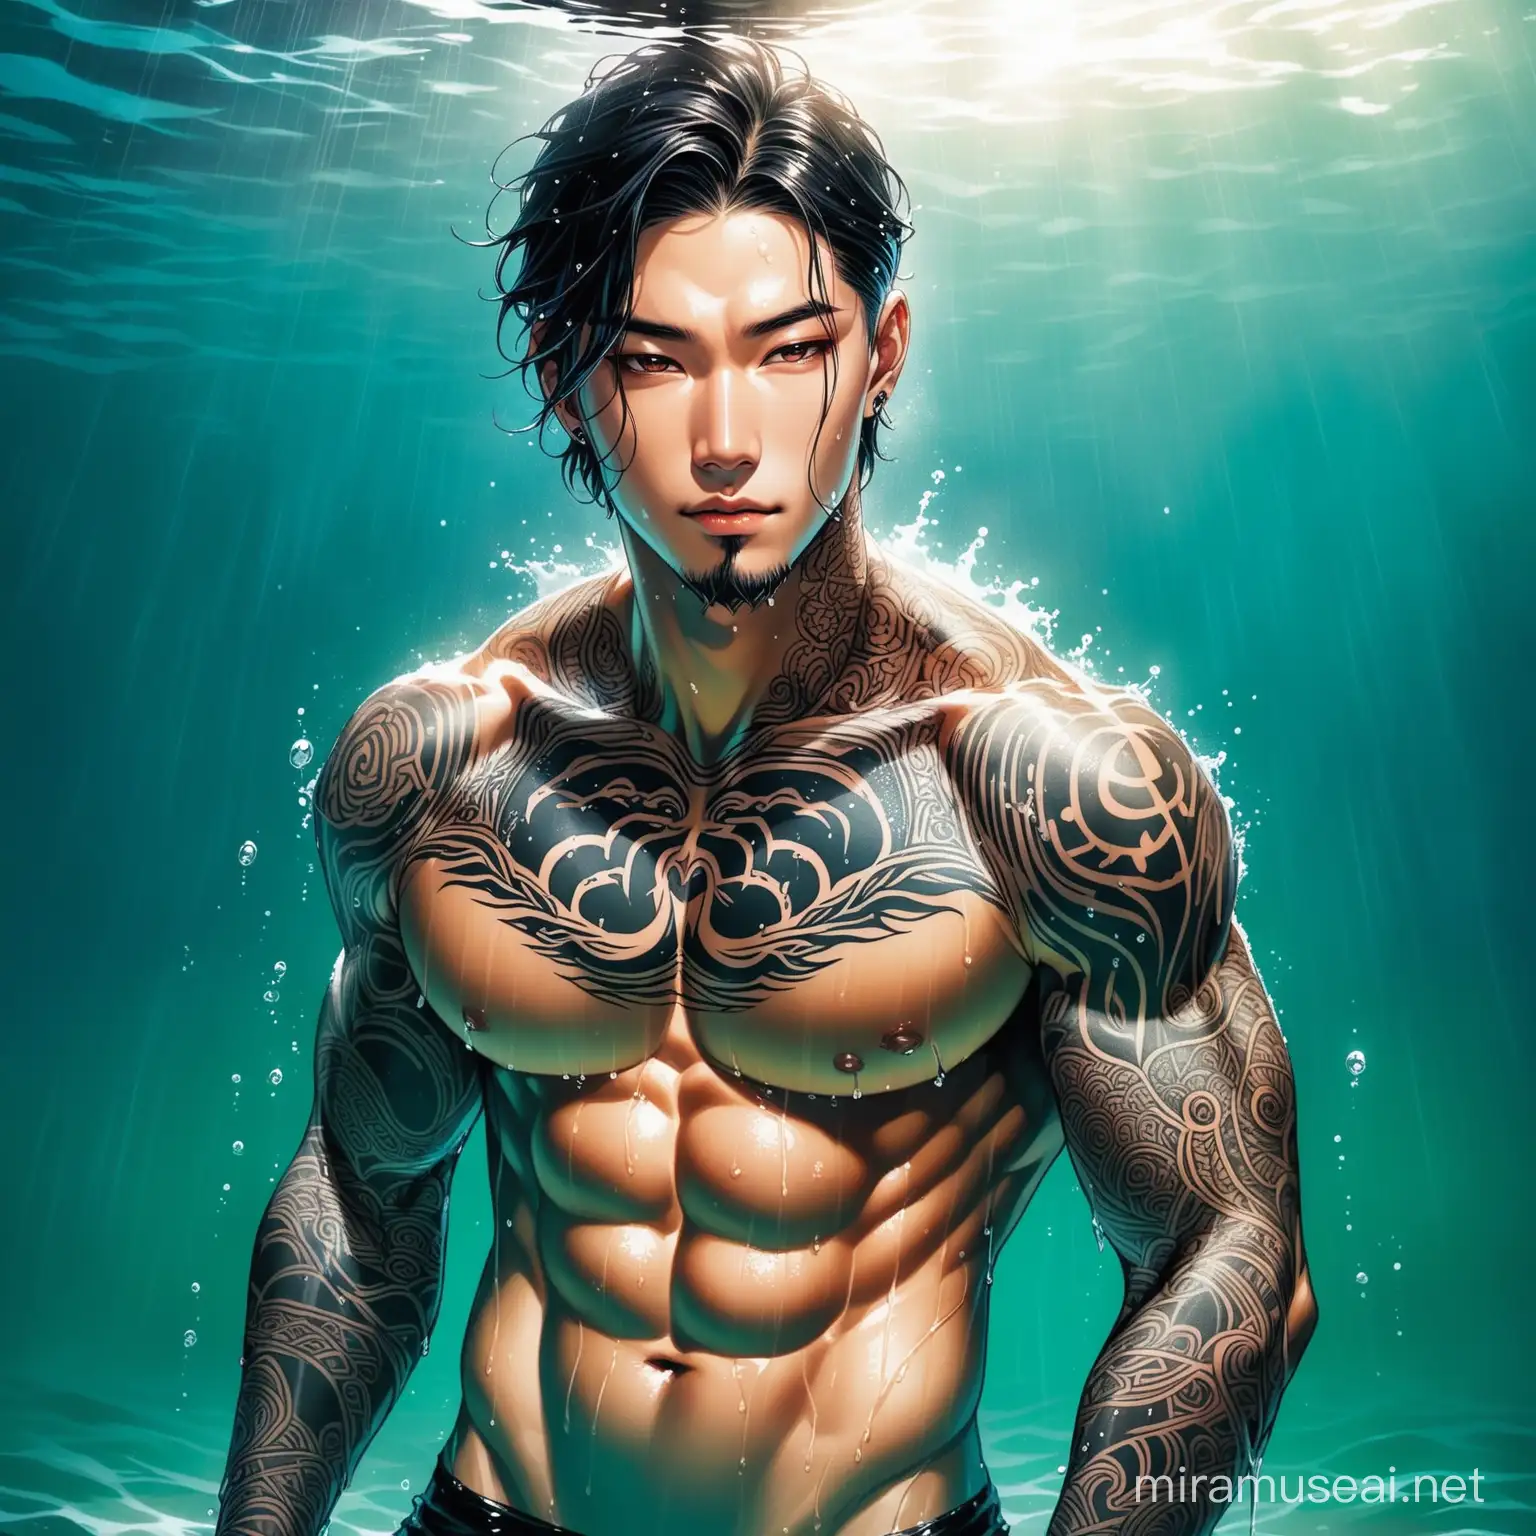 Bellissimo coreano che esce dalle profondità del mare. È muscolo, tatuato tutto bagnato e bello come un Dio.